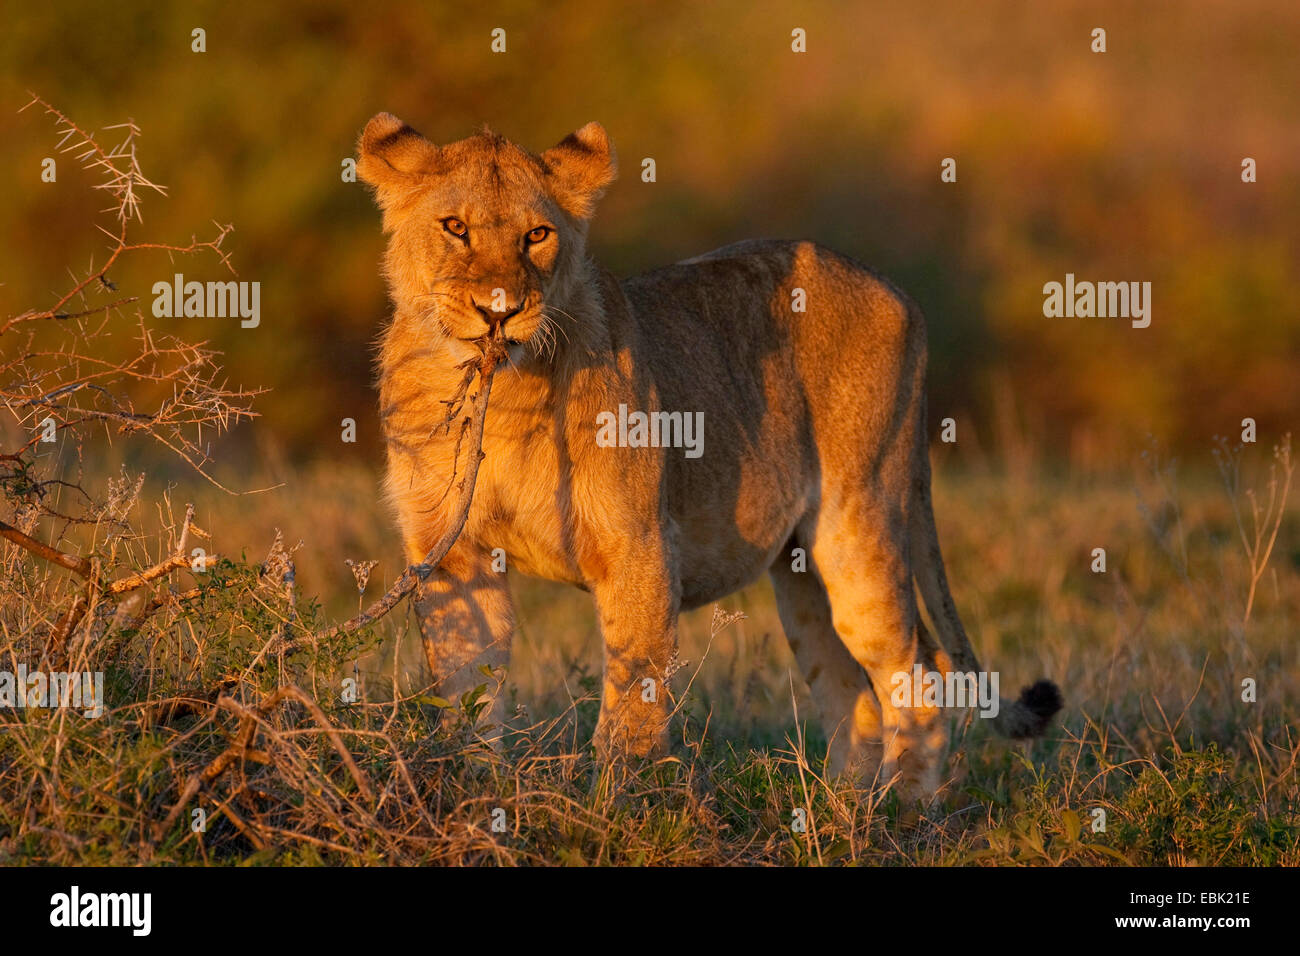 lion (Panthera leo), young lion nibbling at a shrub, Tanzania, Serengeti NP Stock Photo